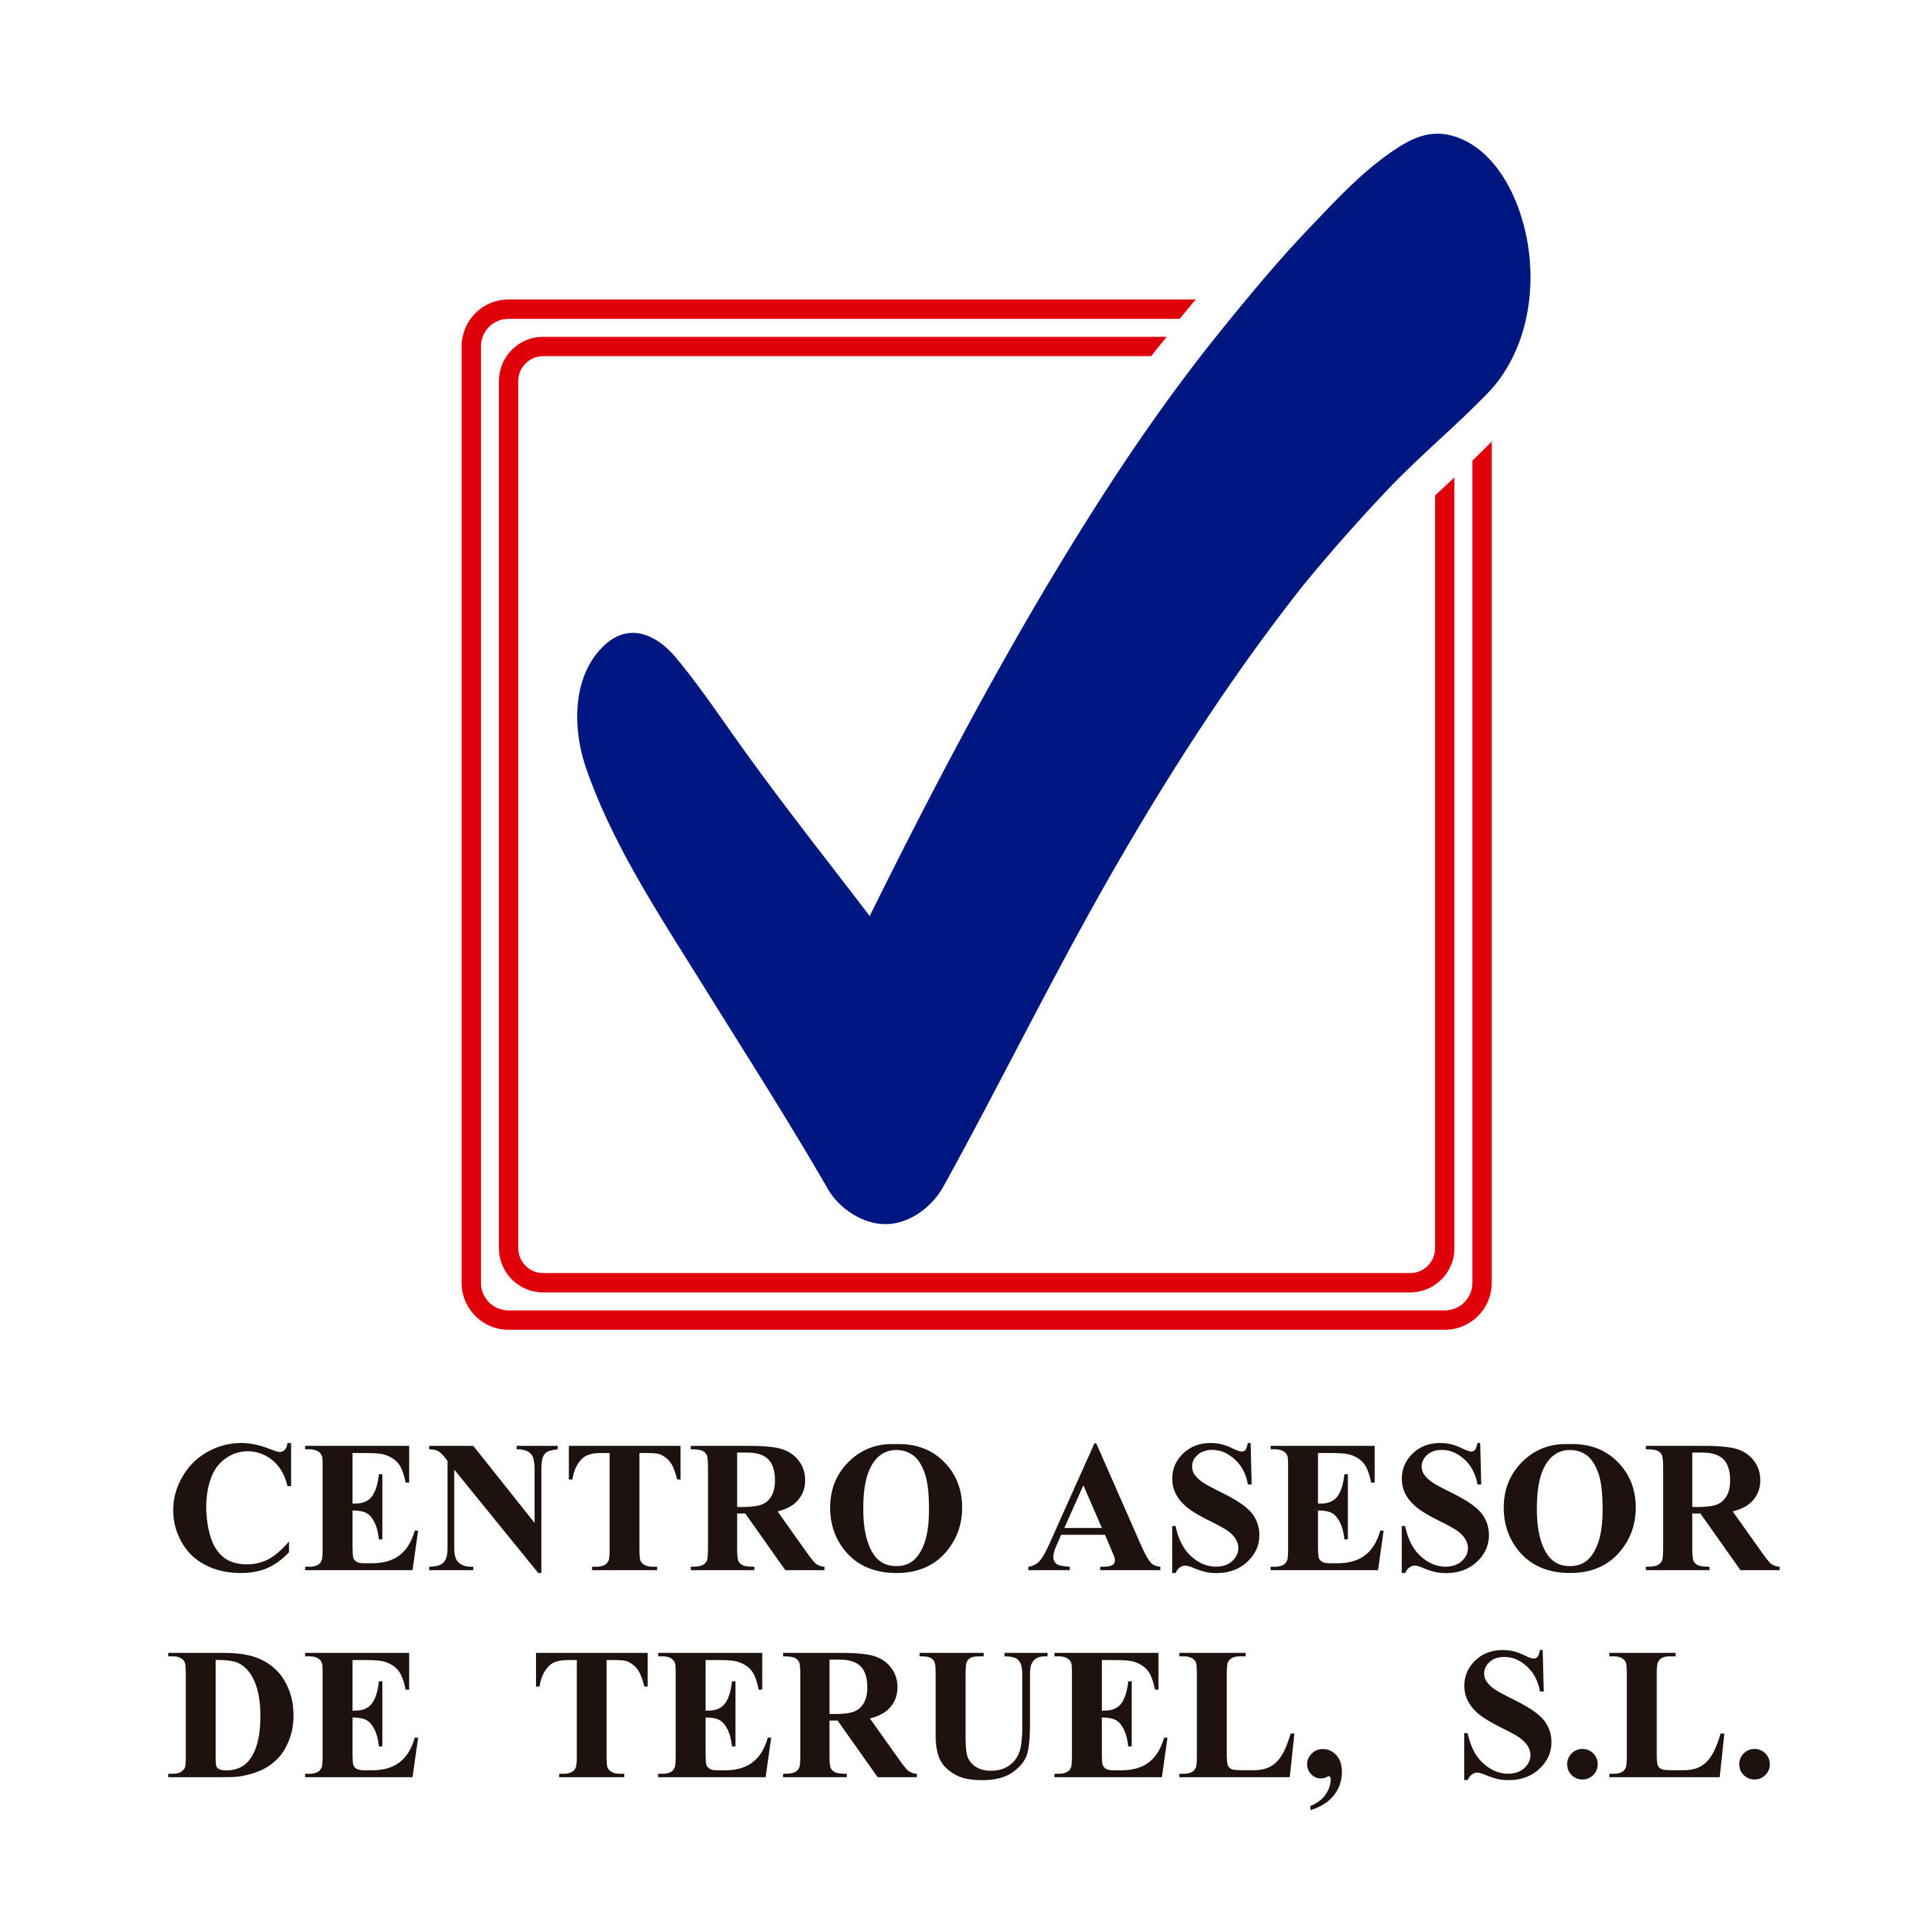 Centro Asesor De Teruel S.L. Teruel